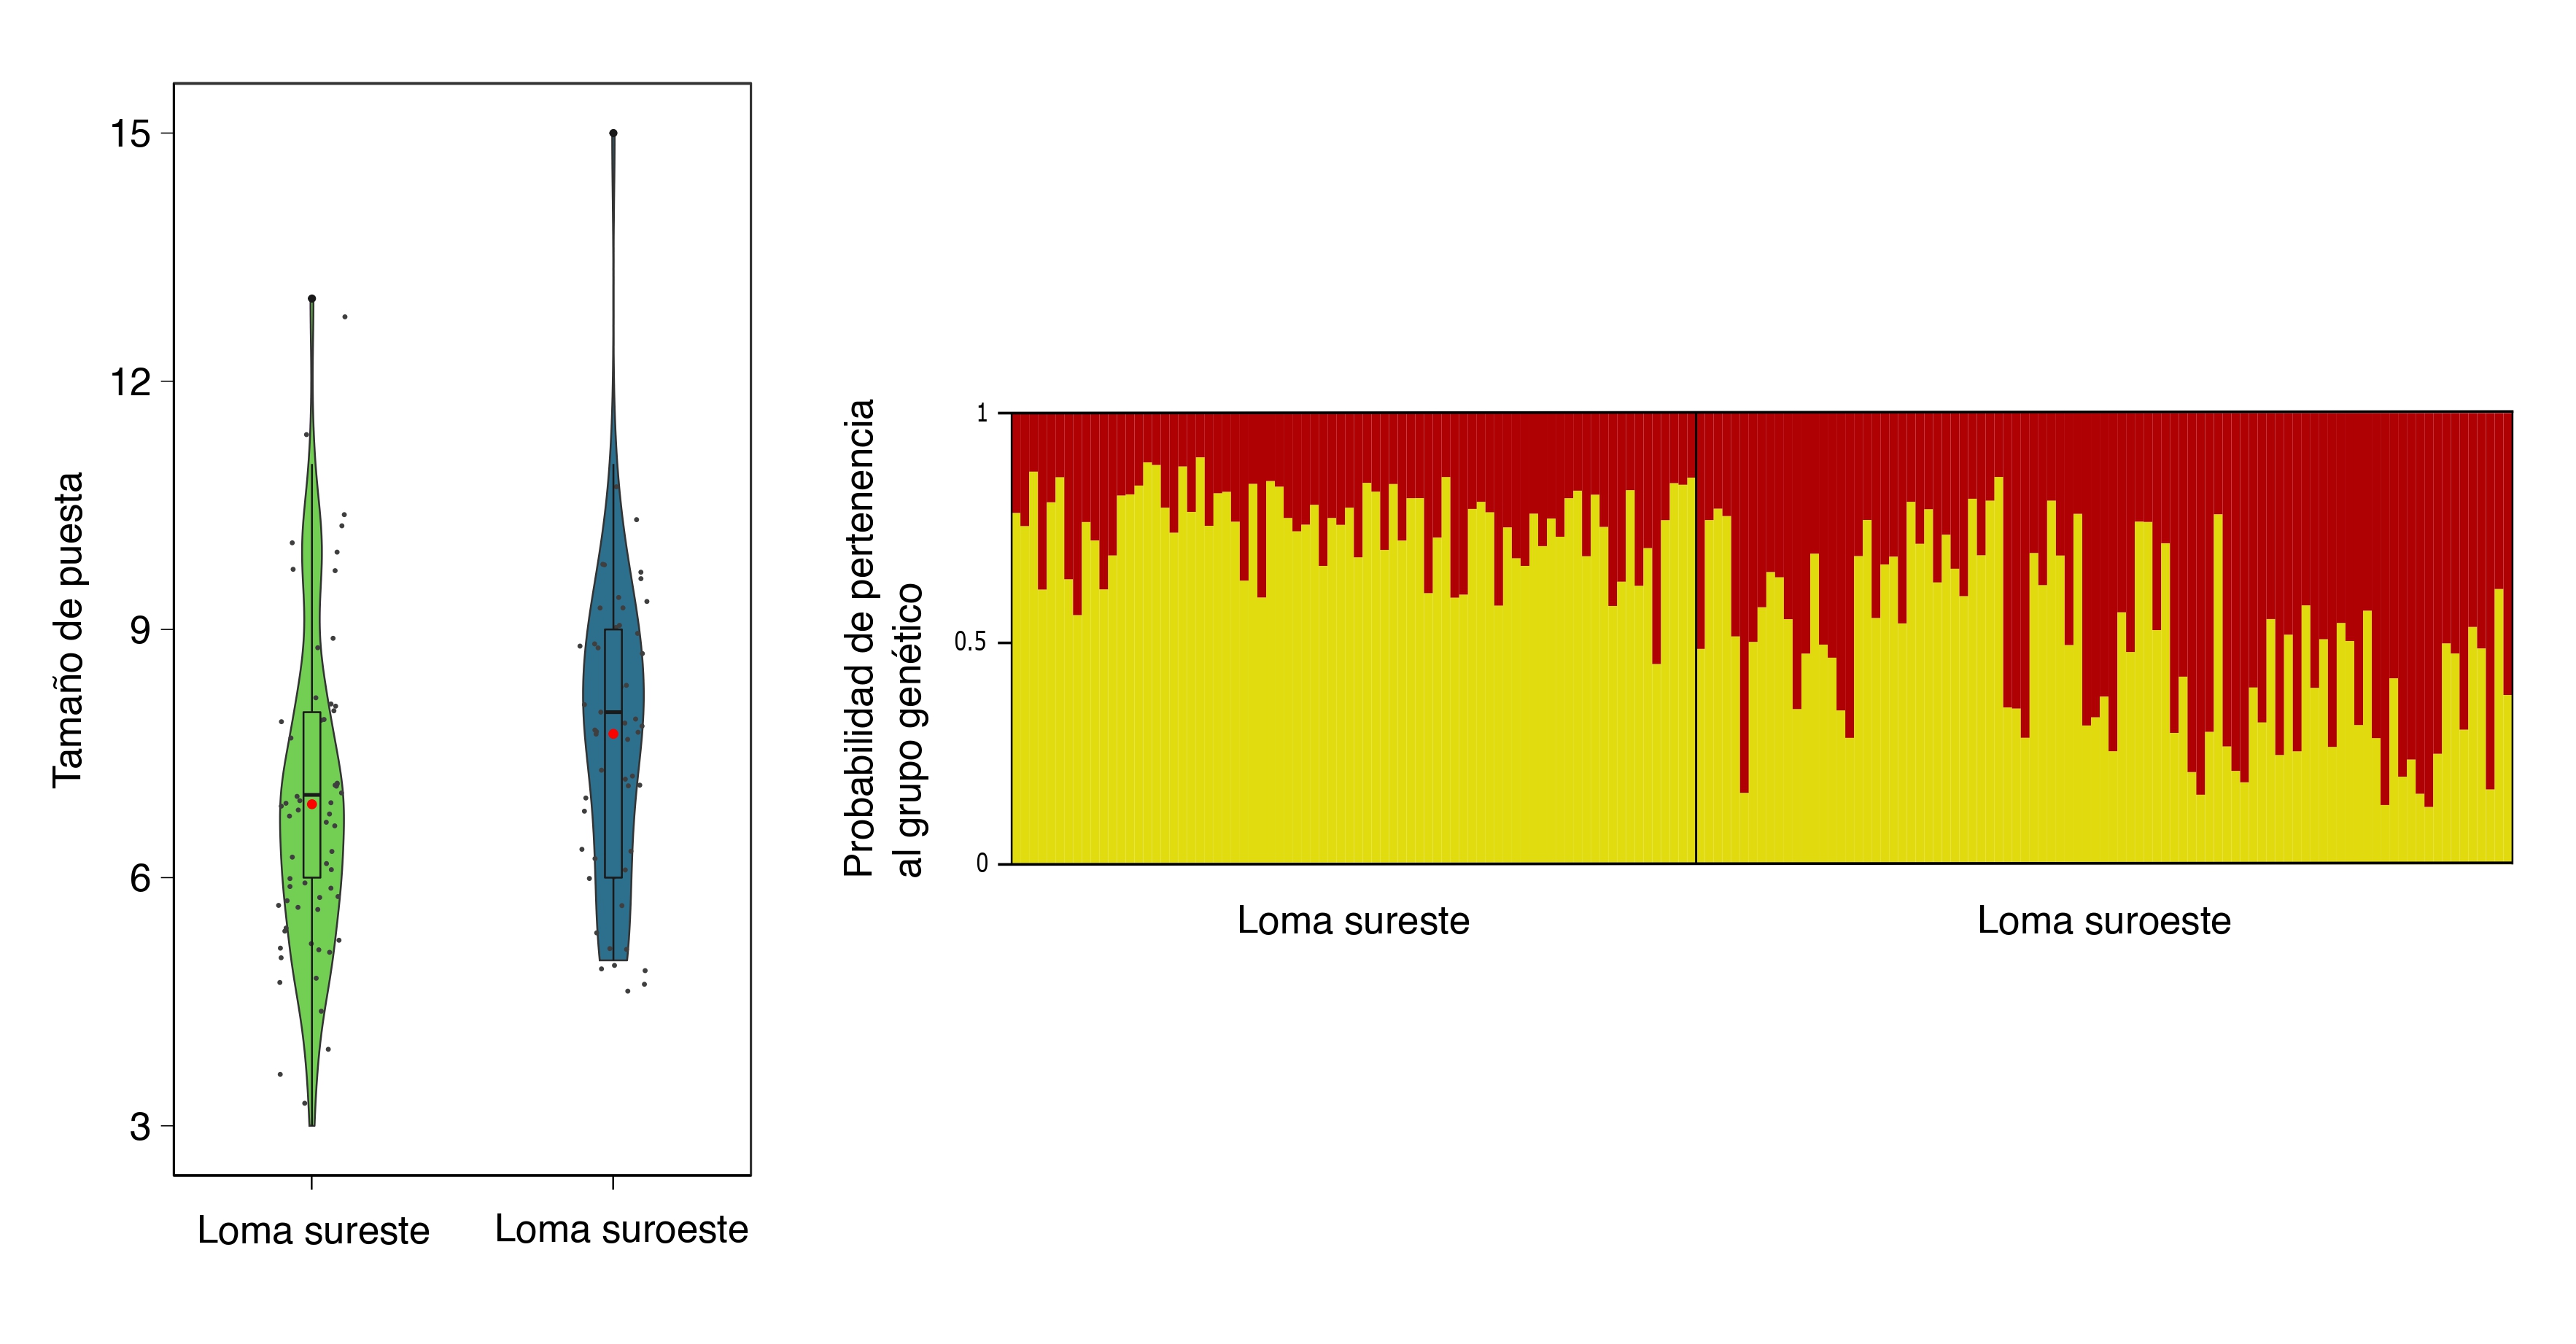 Izquierda: variación en el tamaño de puesta de los herrerillos entre las dos lomas montañosas del sistema de estudio. El gráfico representa violin plots, donde se muestran la media, mediana y dispersión de los datos. Derecha: representación gráfica del análisis genético a partir de los marcadores neutros, que desveló la presencia de dos clústeres o grupos genéticos (amarillo y rojo) correspondientes a las dos lomas. Elaboración propia.